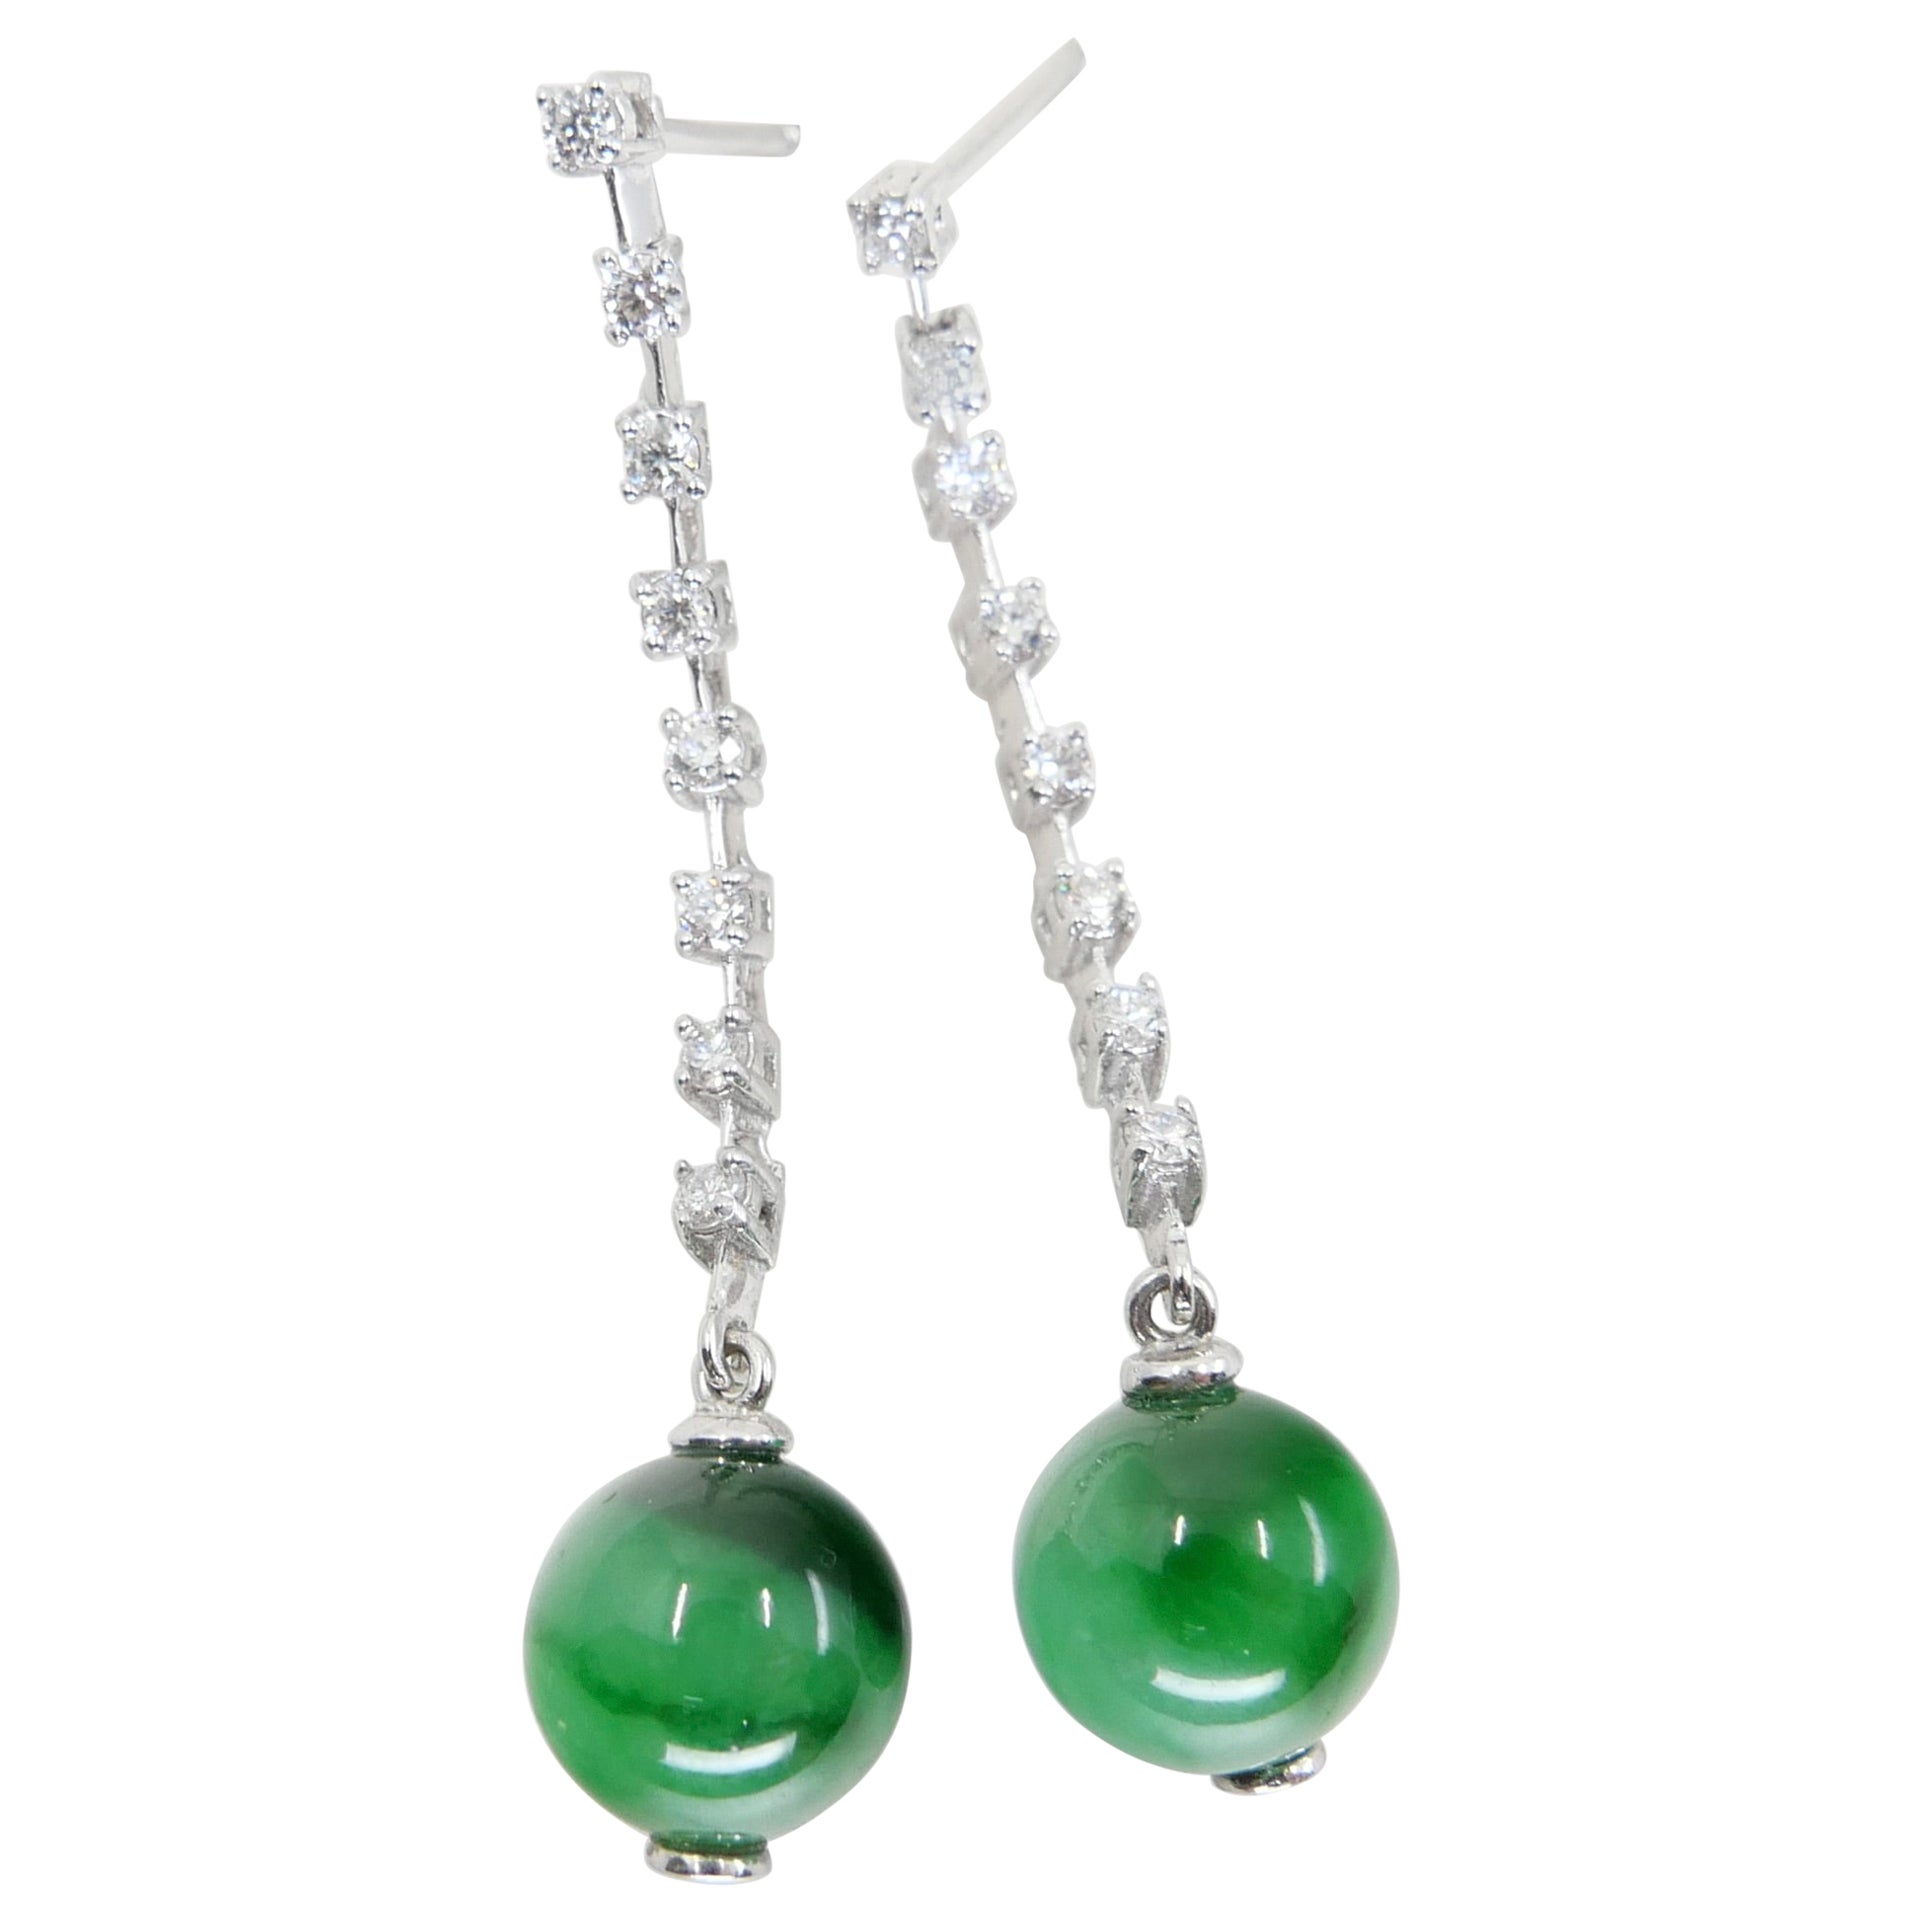 Zertifizierte Apfel- und kaiserlich-grüne Jade-Perlen & Diamant-Tropfen-Ohrringe. Super-Glühen